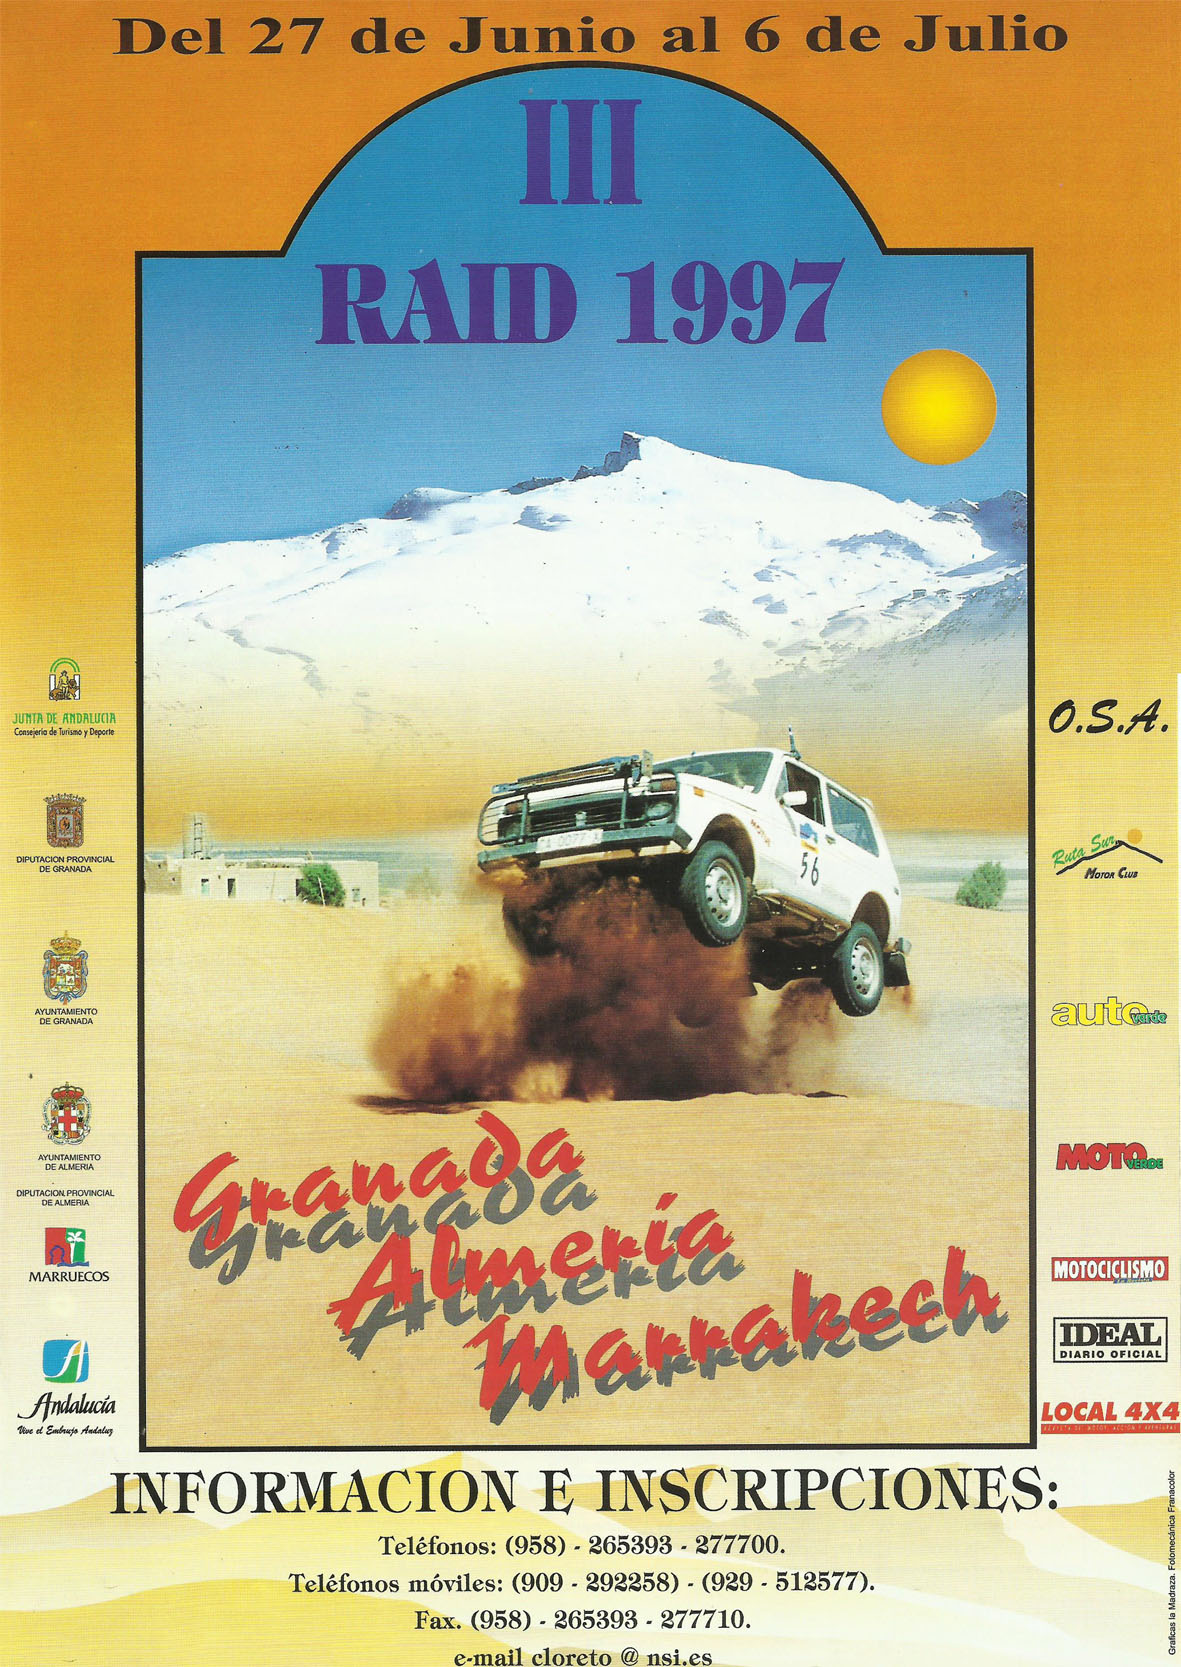 Revista Local 4x4 32 27 Publicidad Rallye Granada Almería Marrakech